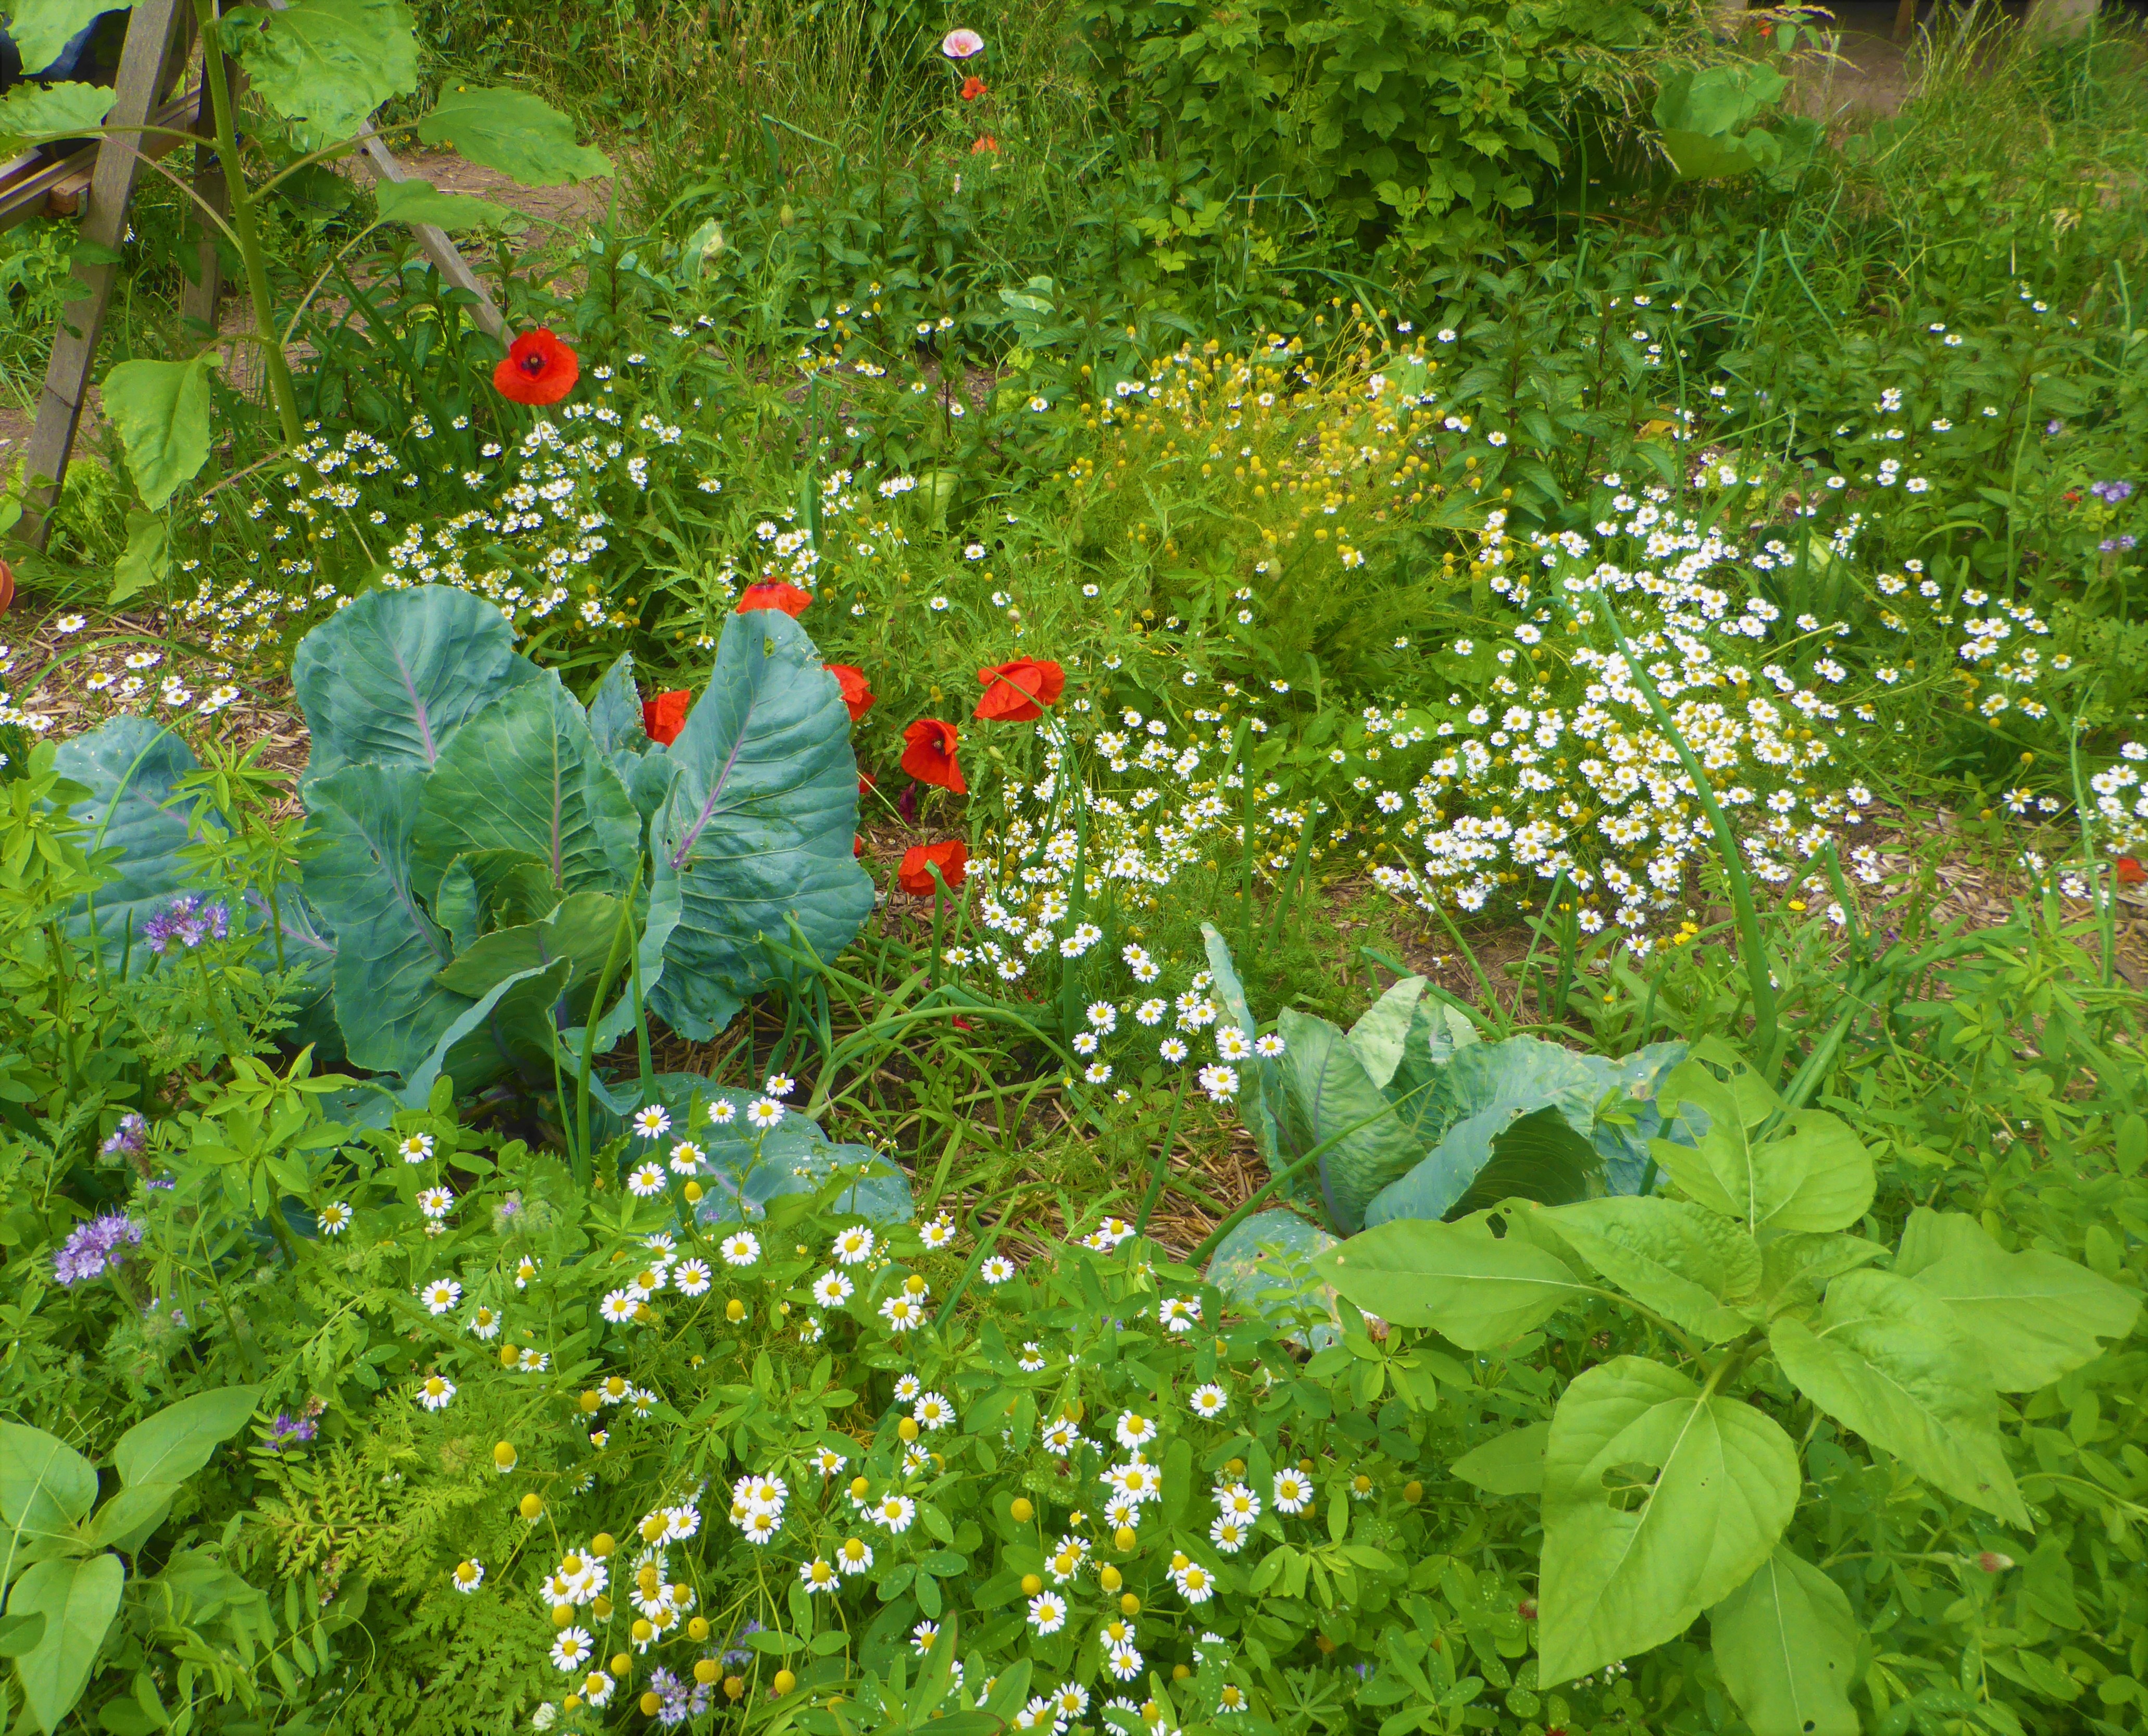 La biodiversité fleurie au jardin (© Michel Cognard)